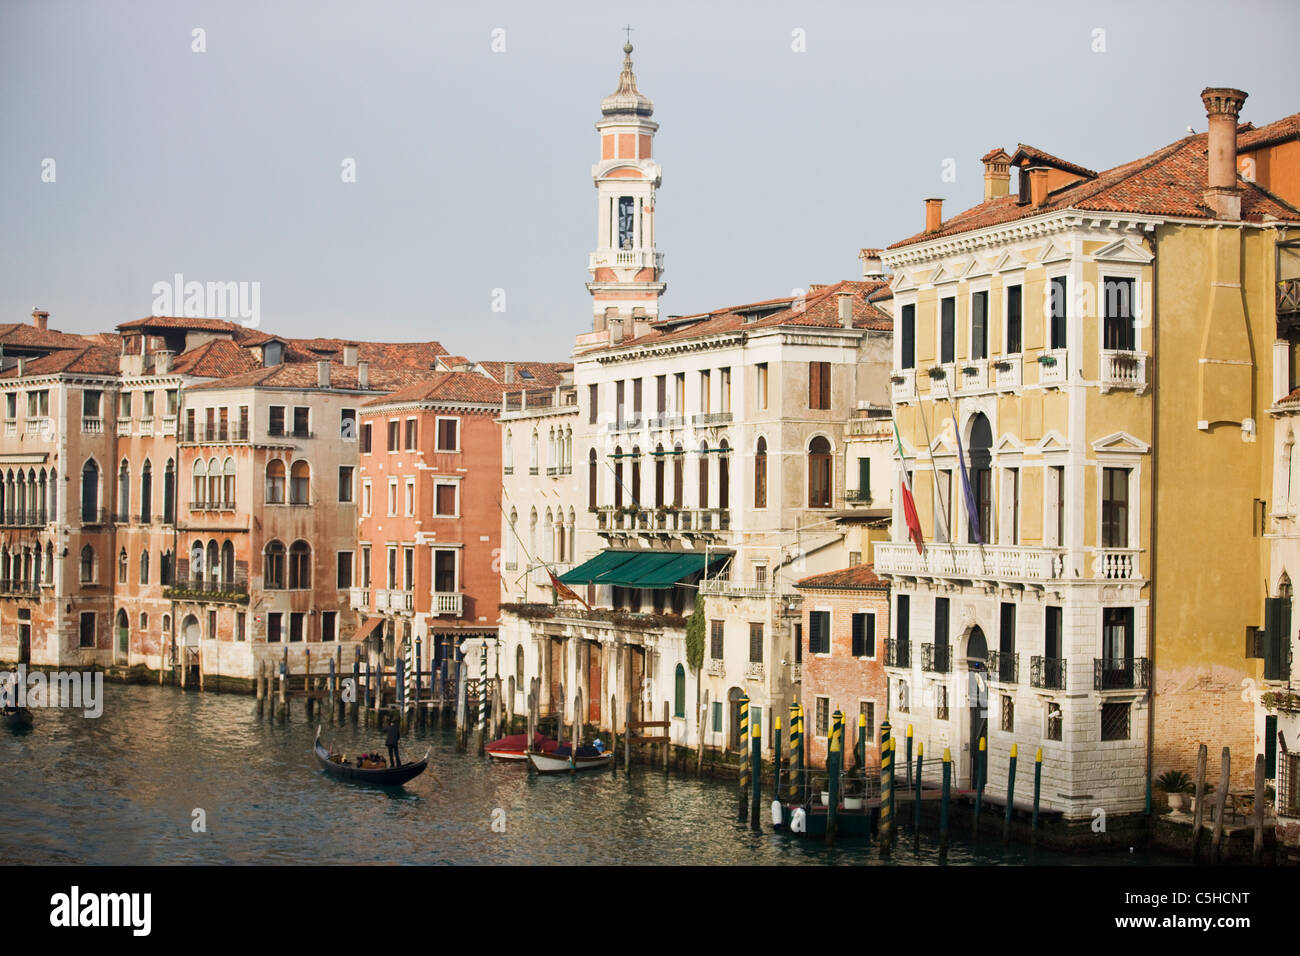 Der Turm der Kirche Bell Tower von Santi Apostoli und Canal Grande, Rialto Bridge, Venedig, Italien Stockfoto